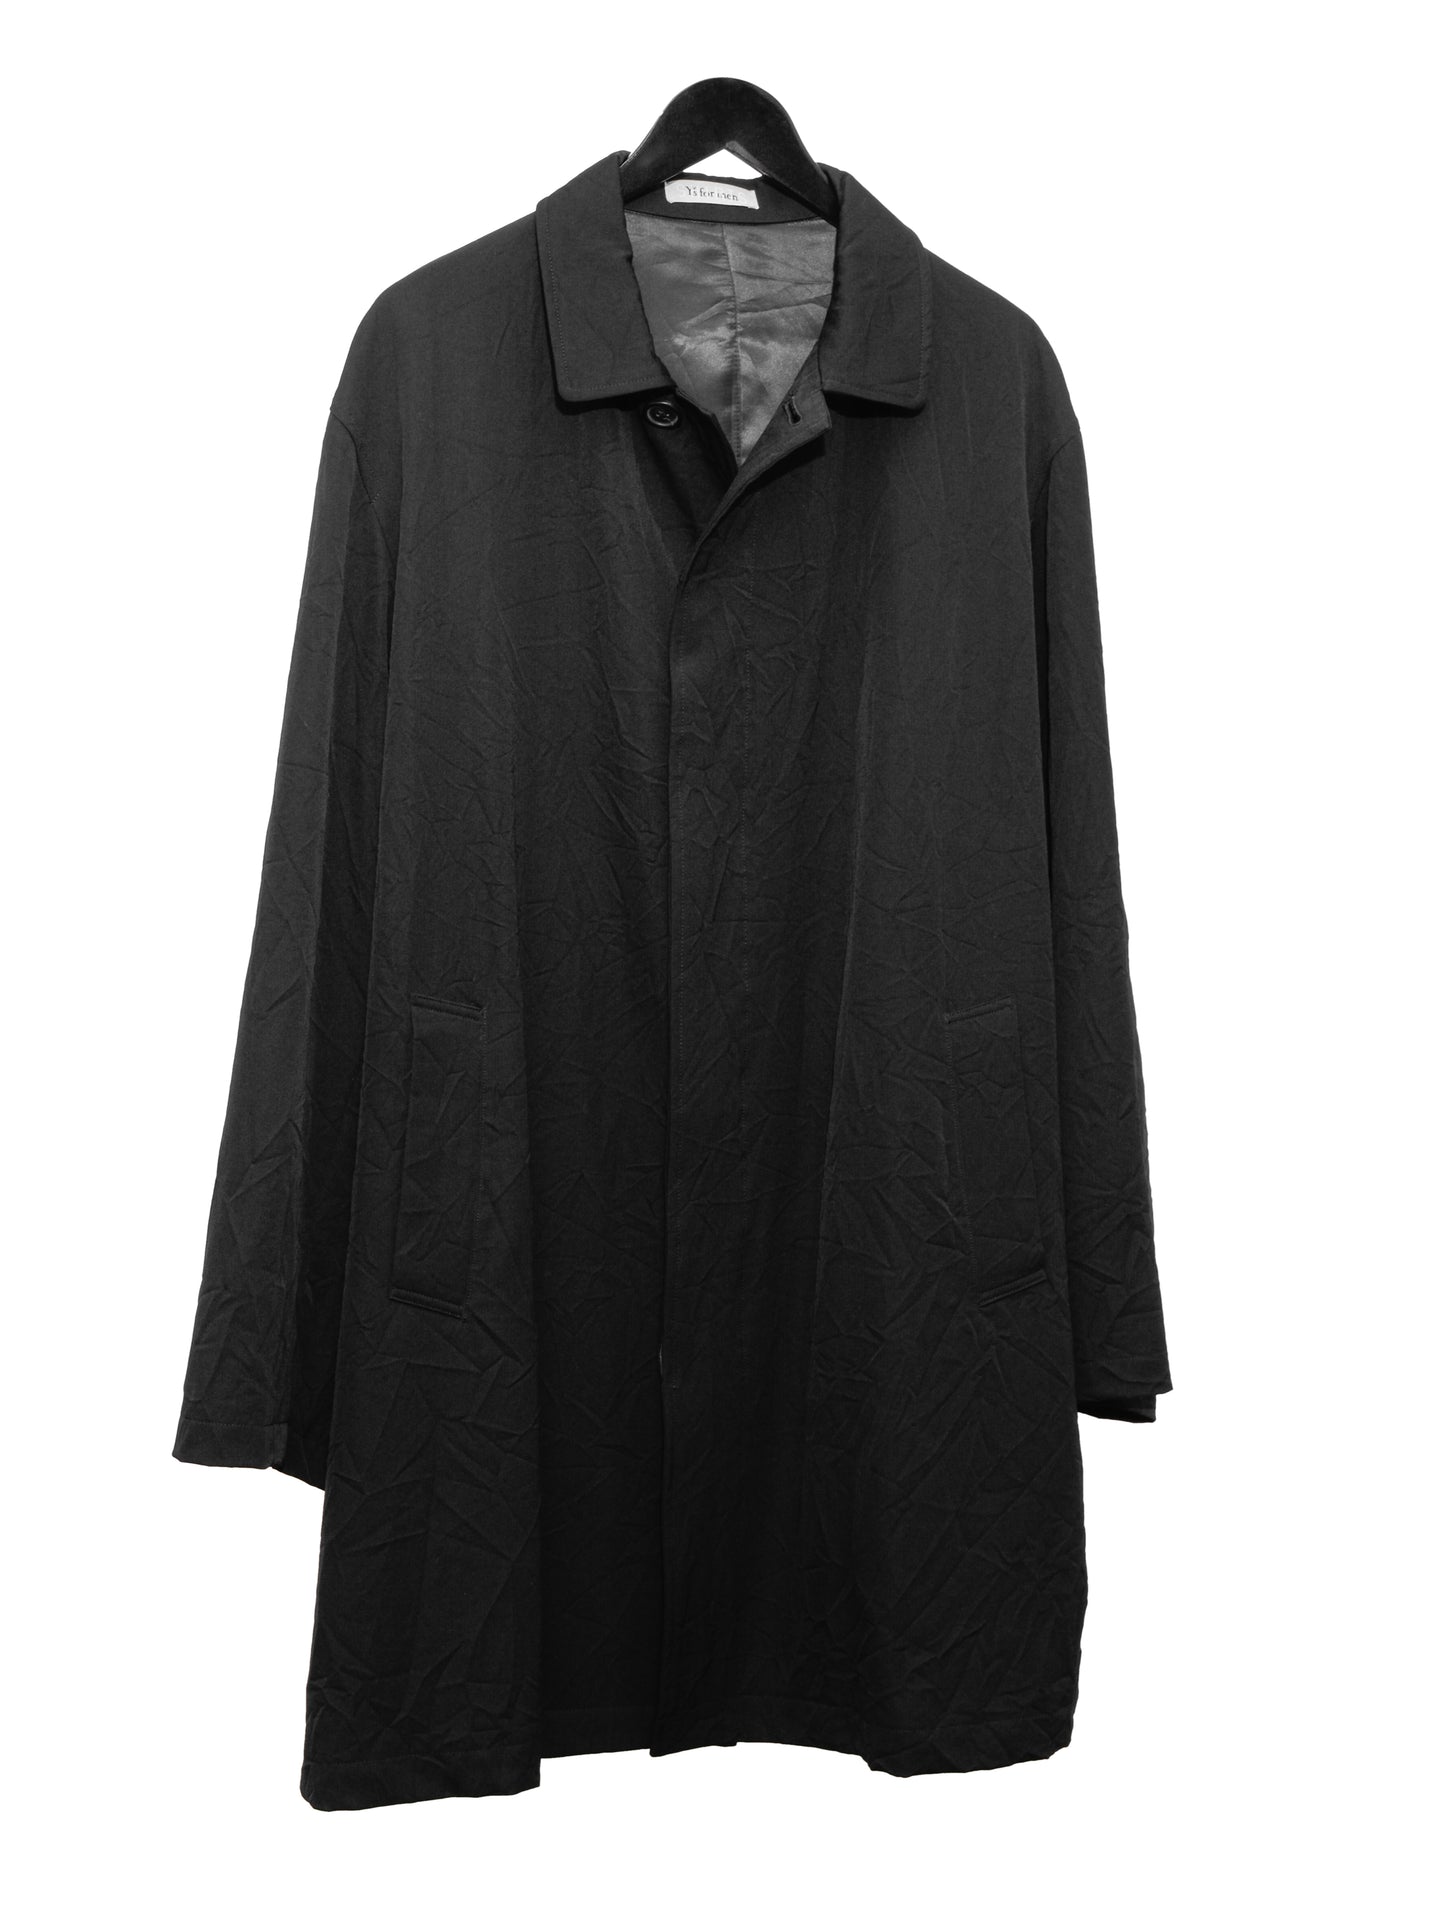 mac coat black ∙ wrinkled wool ∙ large